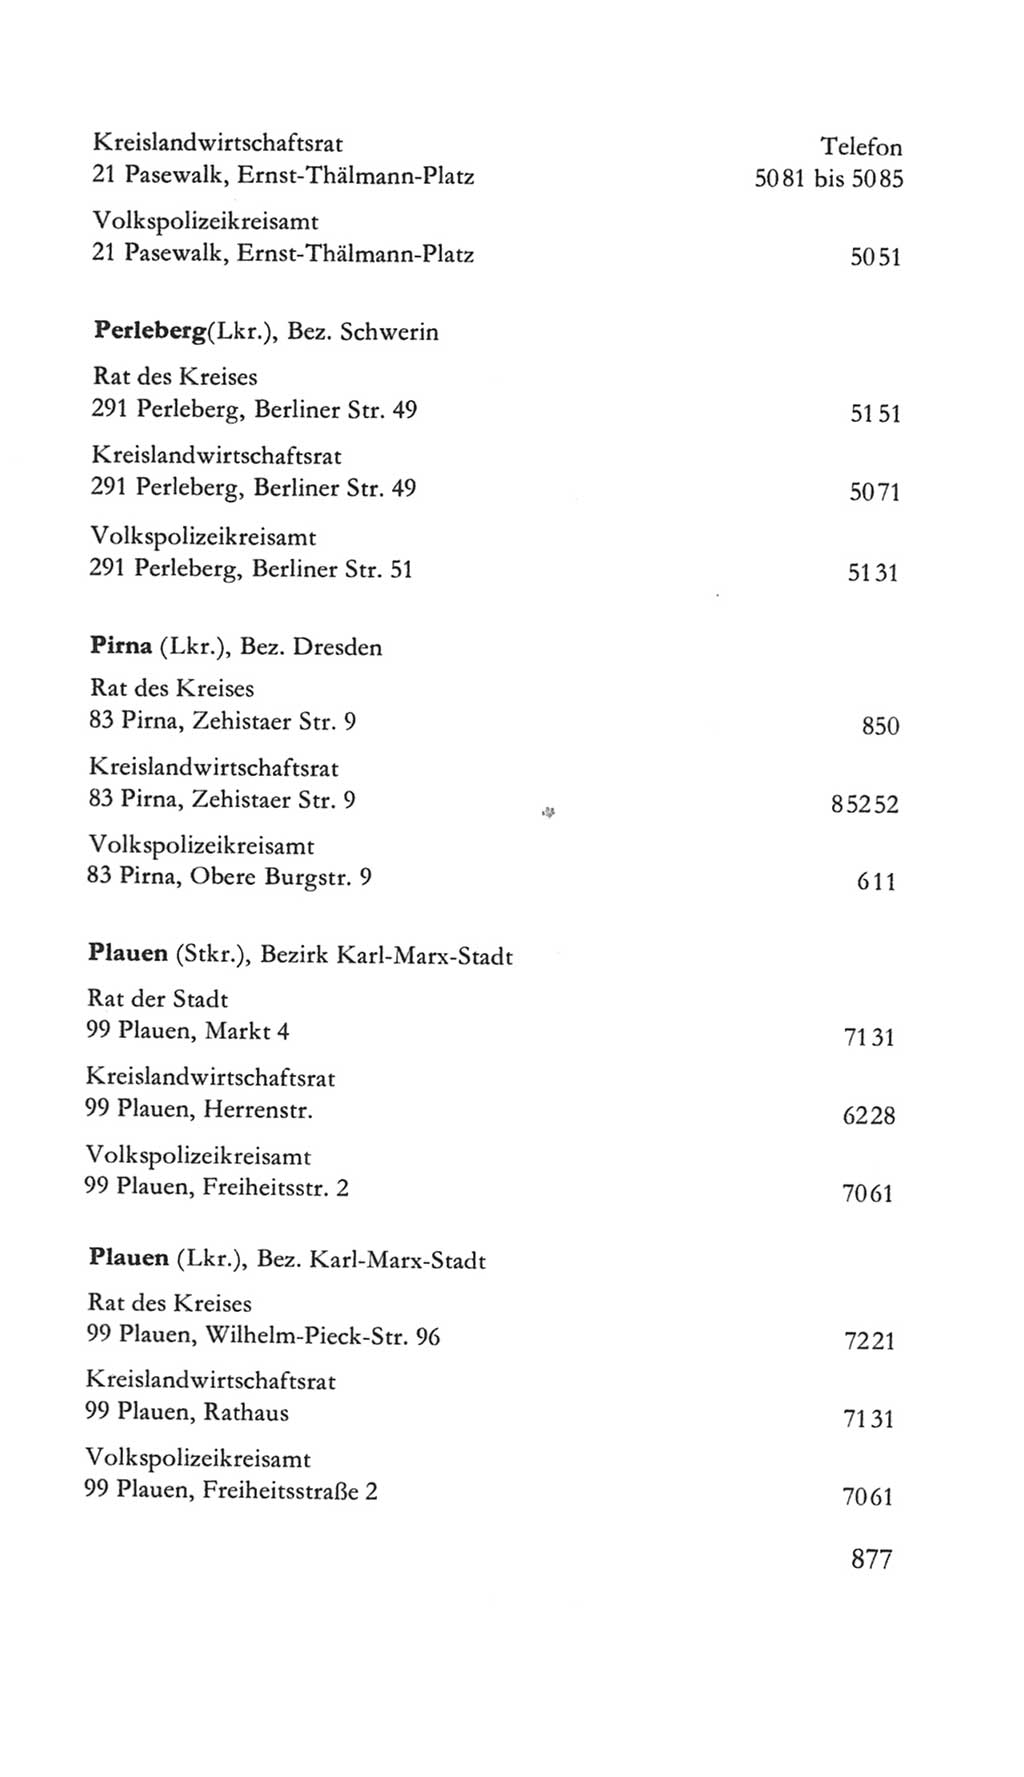 Volkskammer (VK) der Deutschen Demokratischen Republik (DDR) 5. Wahlperiode 1967-1971, Seite 877 (VK. DDR 5. WP. 1967-1971, S. 877)